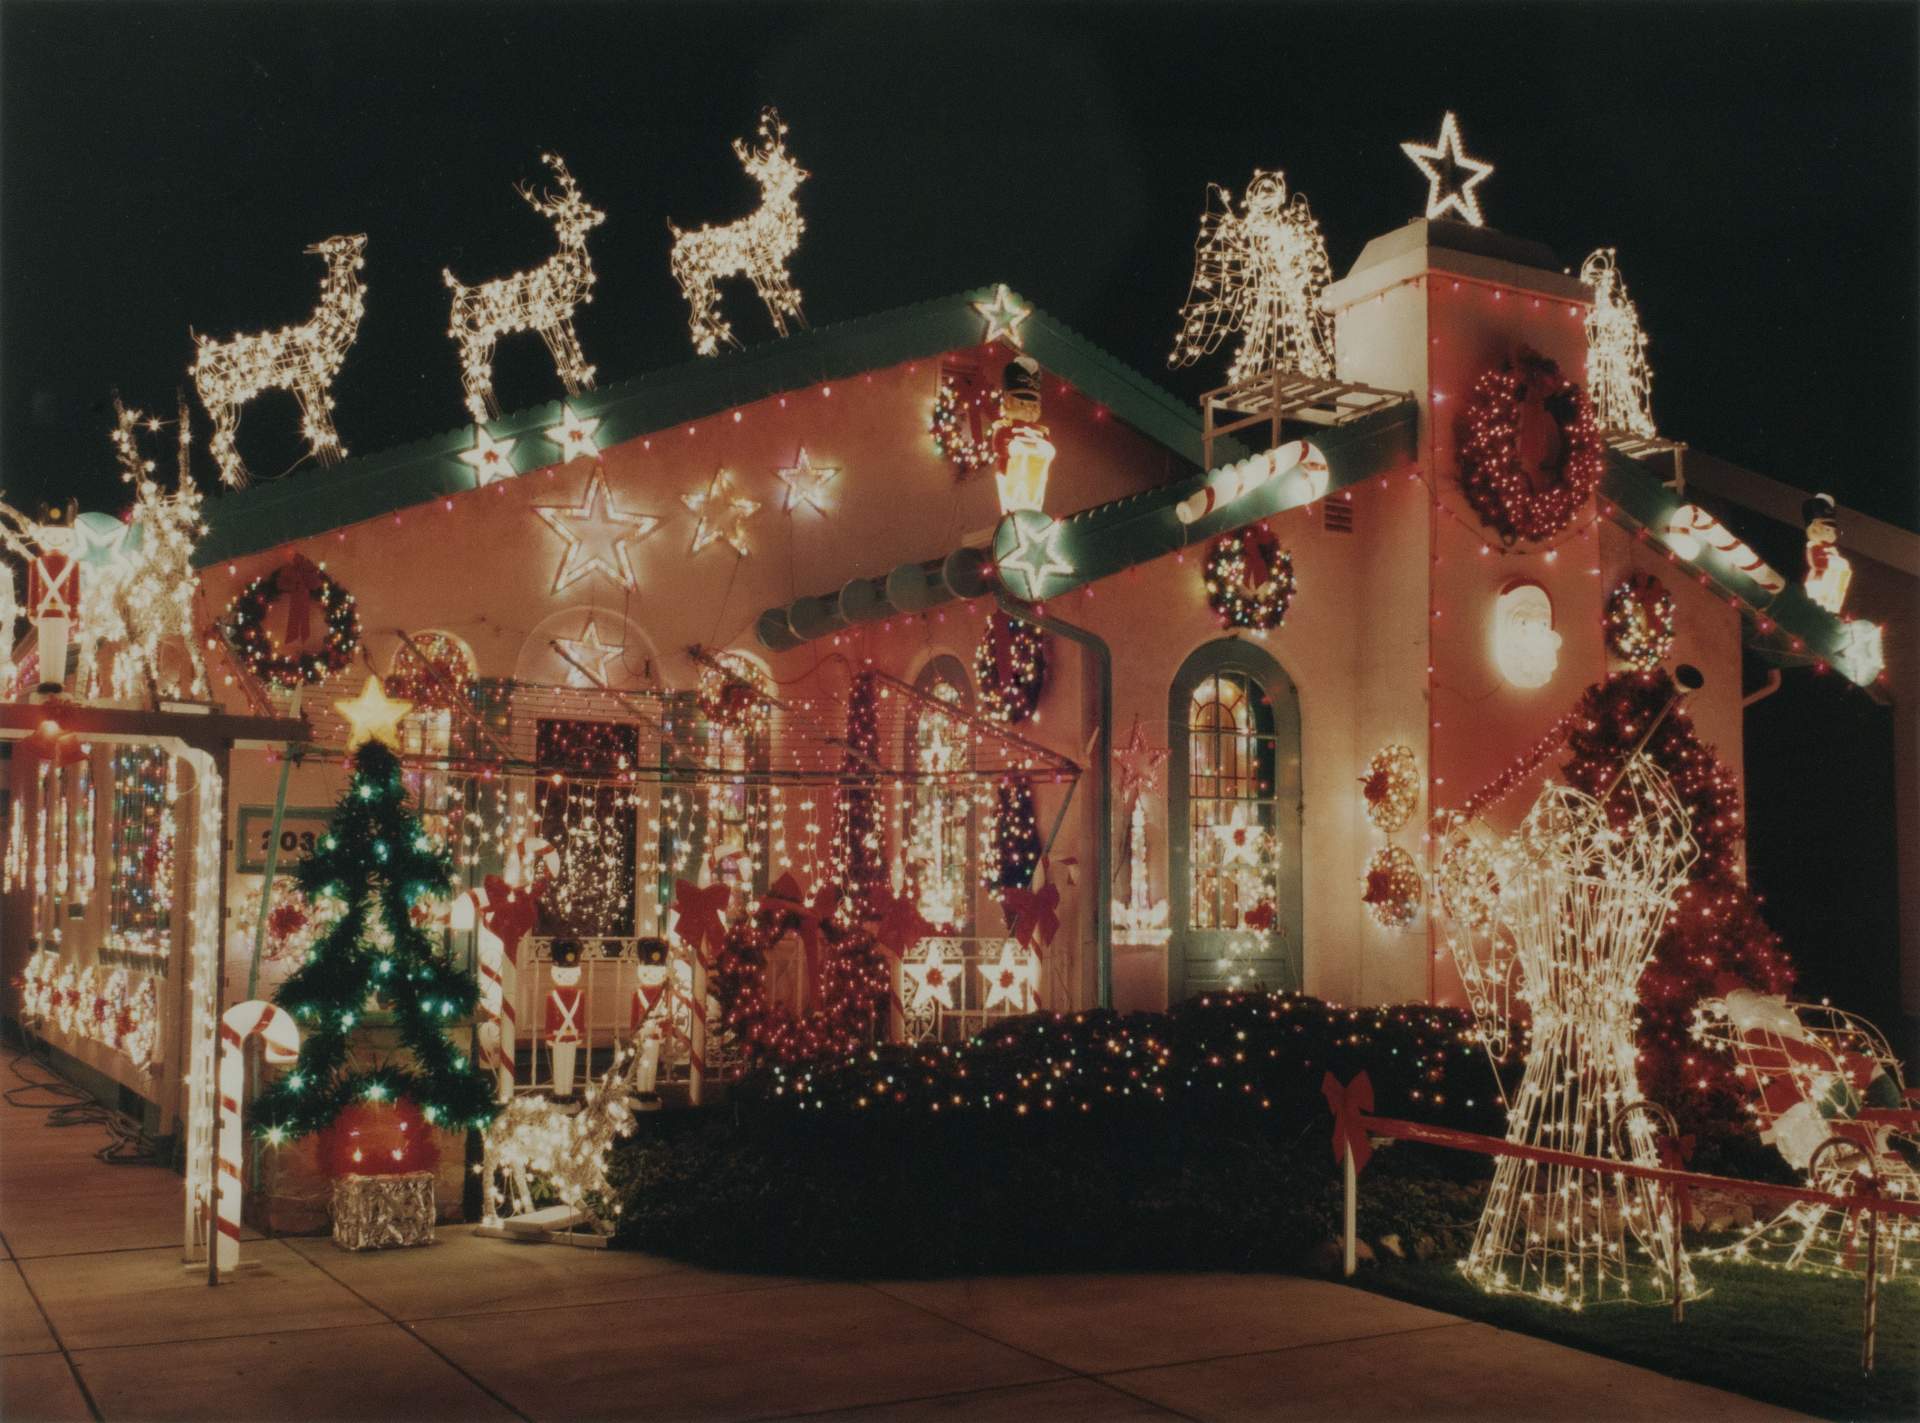 Joseph Pandolfino’s Christmas Display, Buffalo, NY